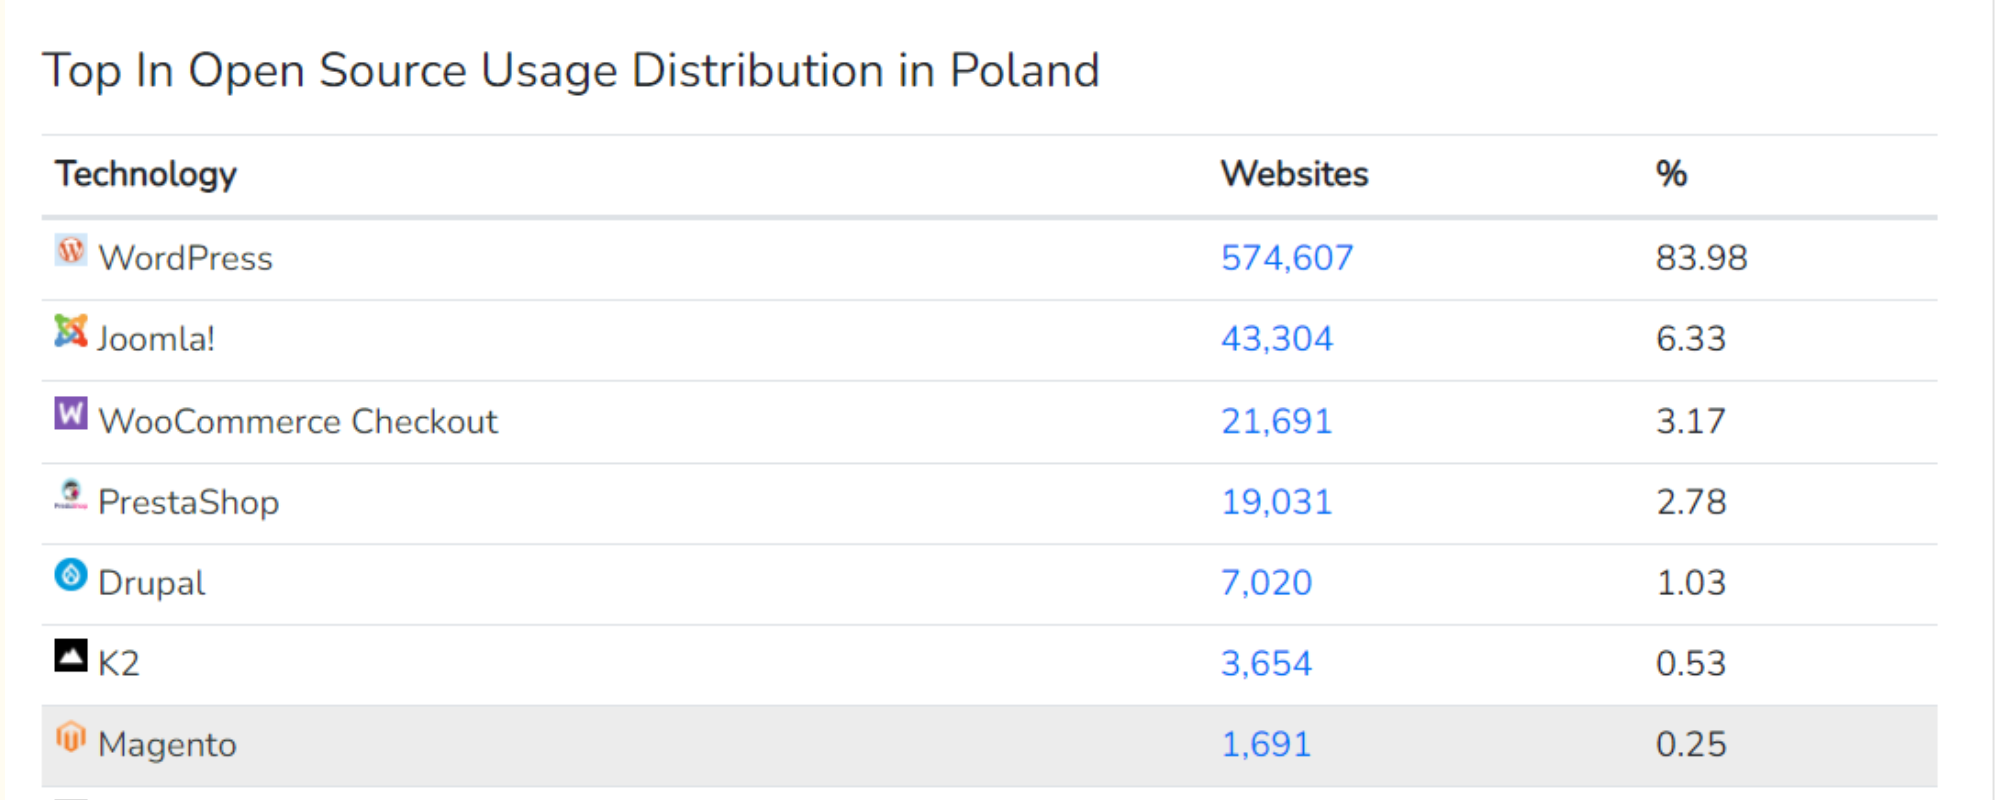 żródło: https://trends.builtwith.com/shop/open-source/country/Poland